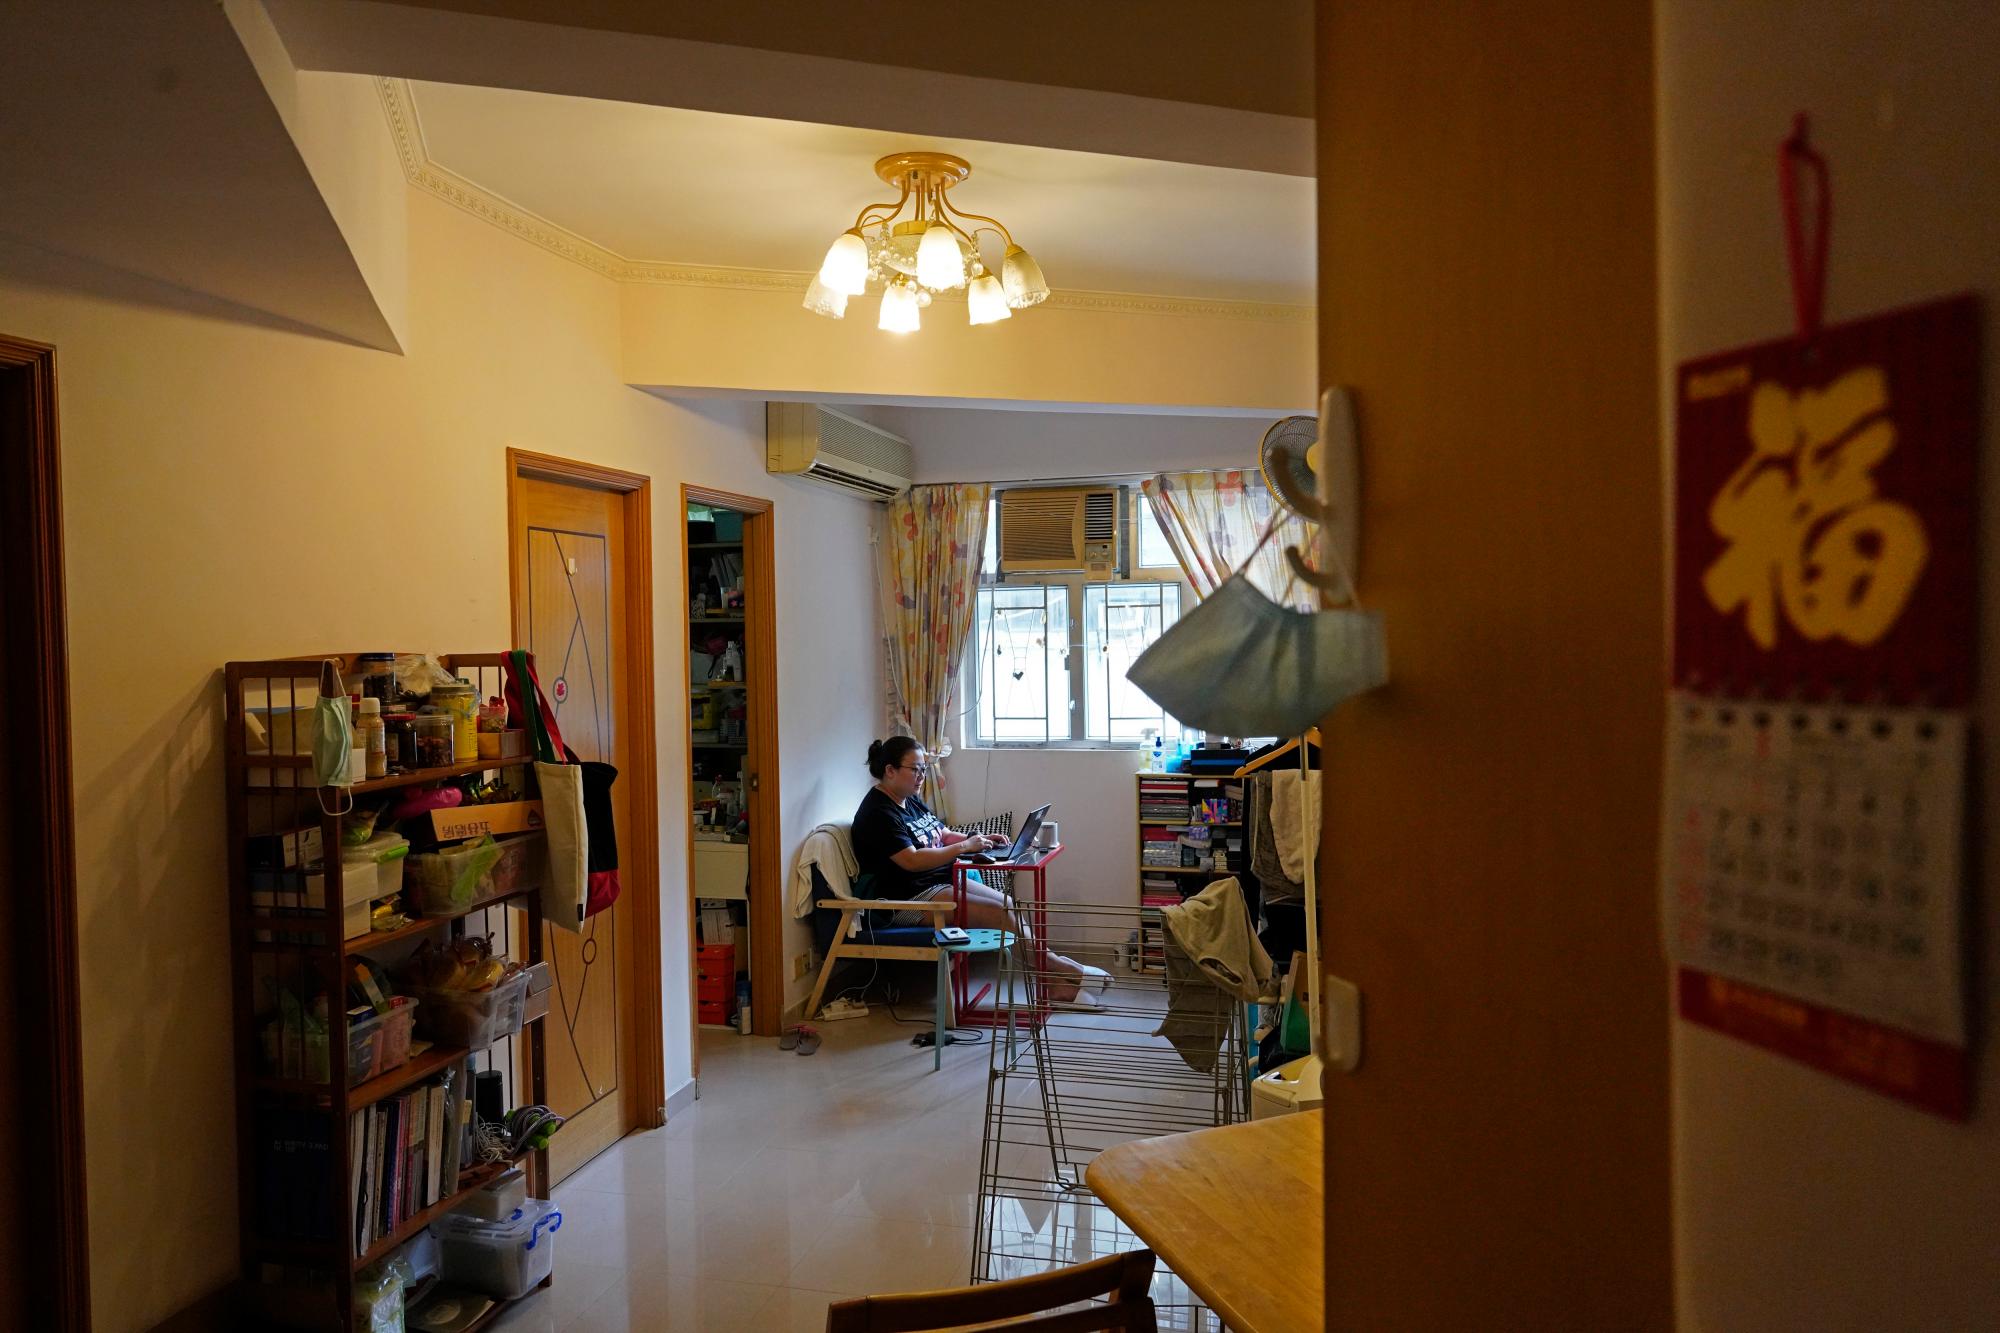 La reportera de Associated Press, Zen Soo, trabaja desde su sala de estar en su departamento mientras estaba en cuarentena en su hogar en Hong Kong, el 17 de abril de 202. (Foto AP / Vincent Yu)